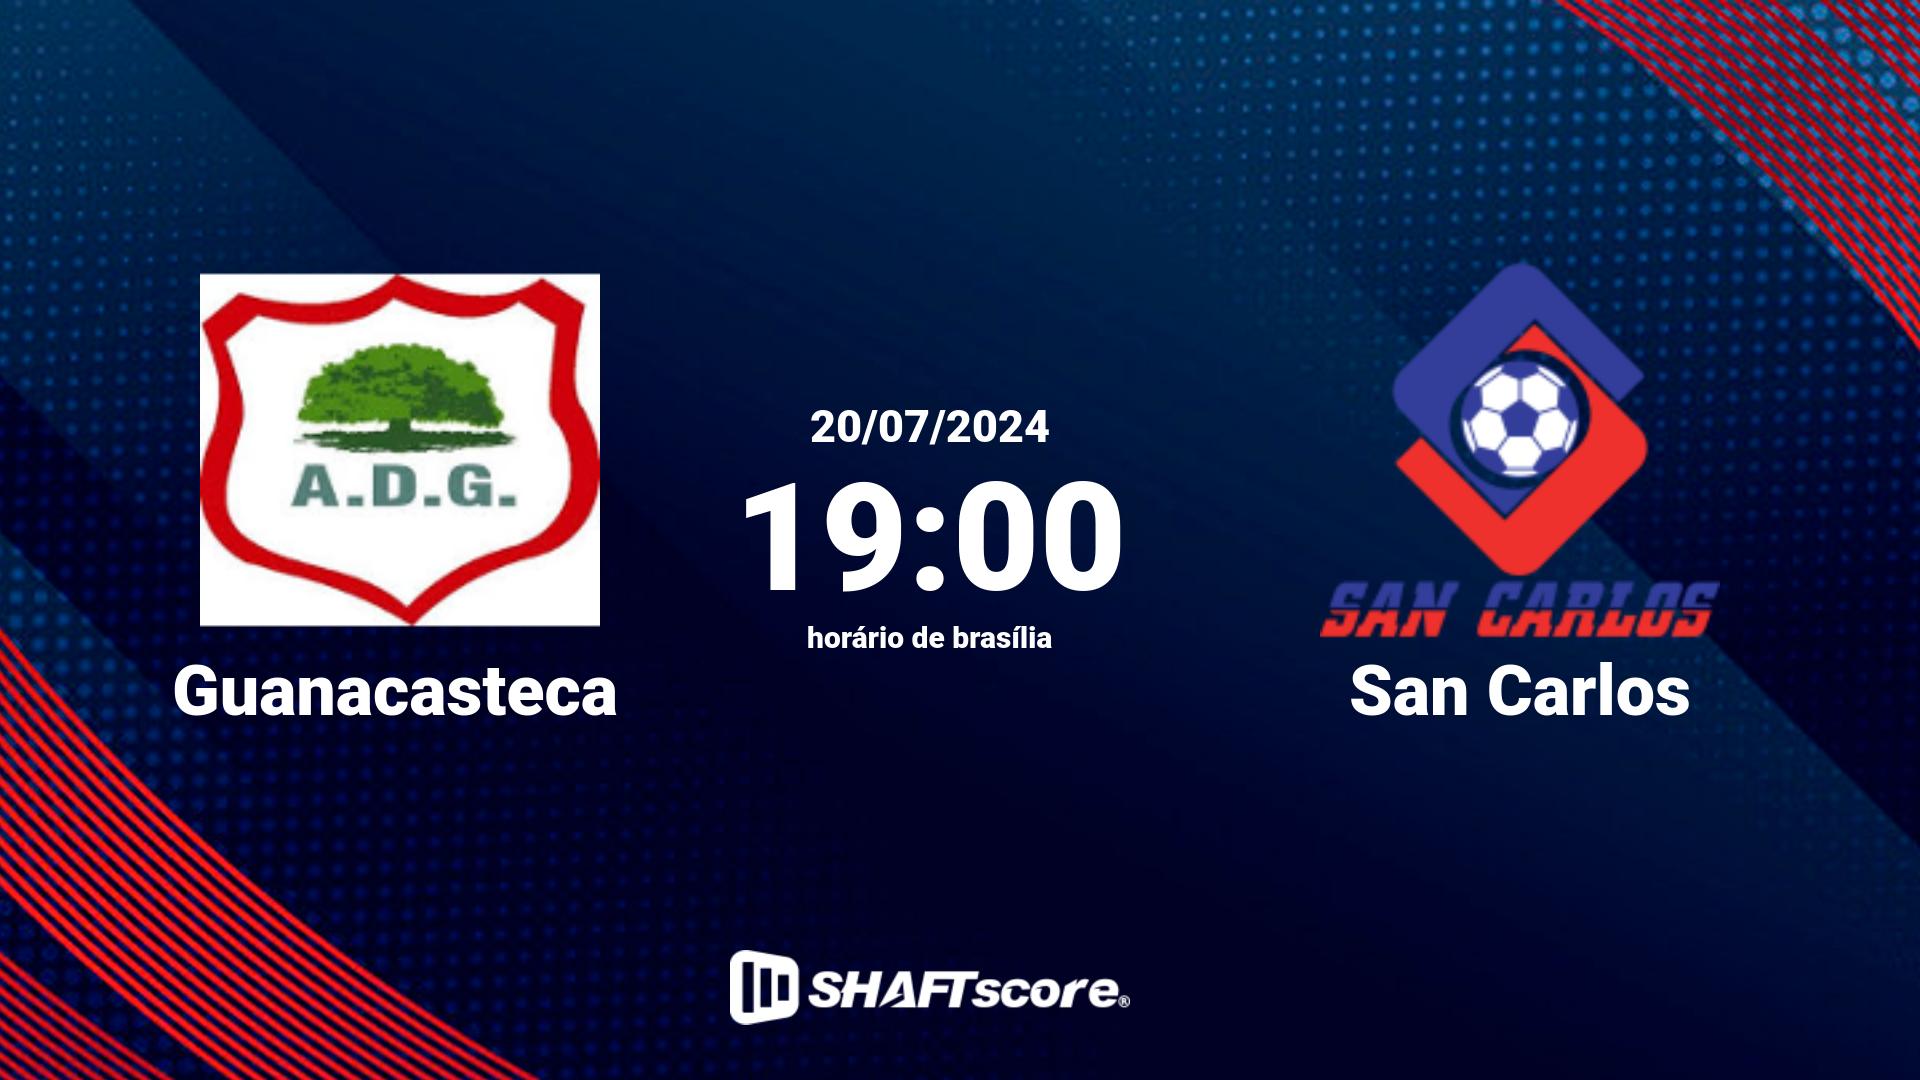 Estatísticas do jogo Guanacasteca vs San Carlos 20.07 19:00